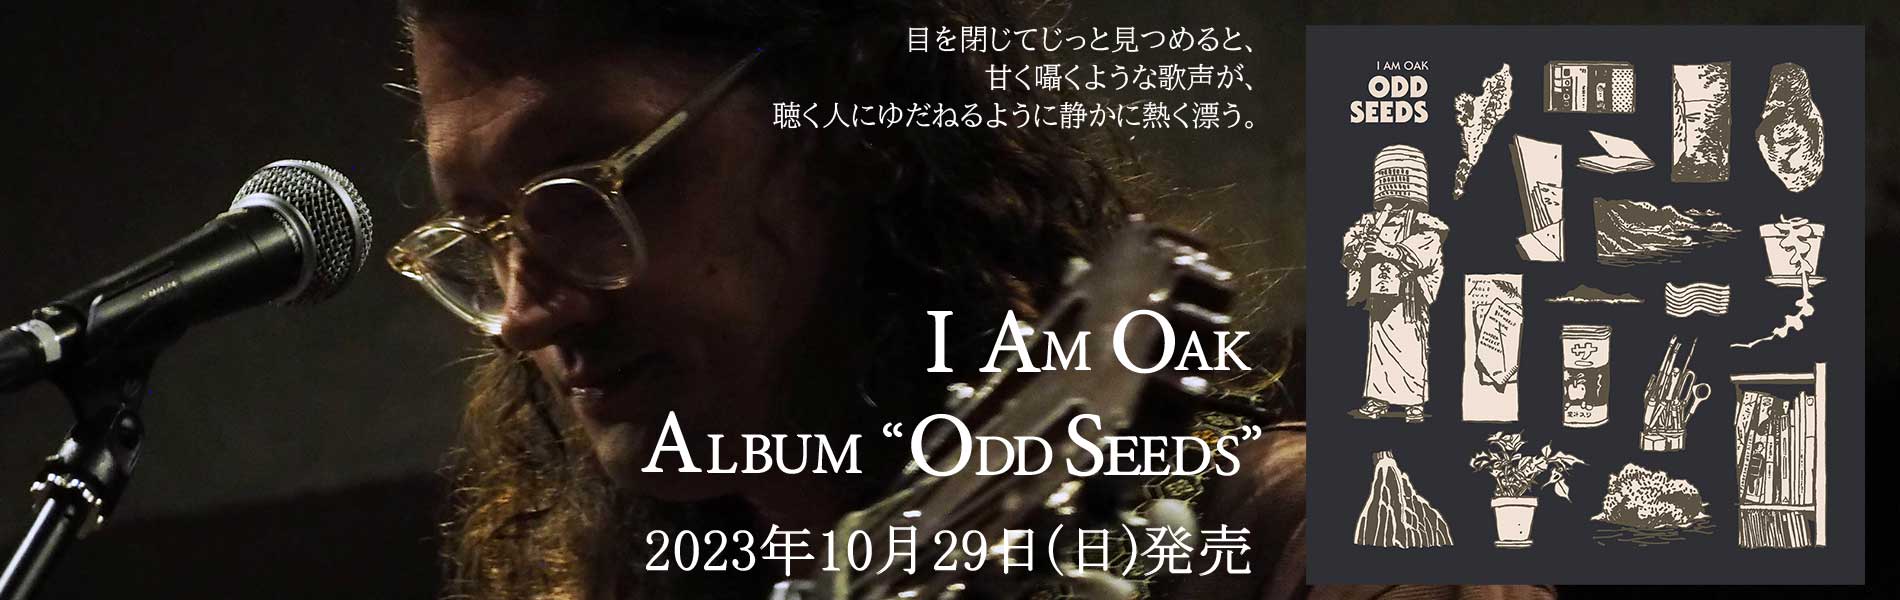 I Am Oak のアルバム「Odd Seeds」リリース